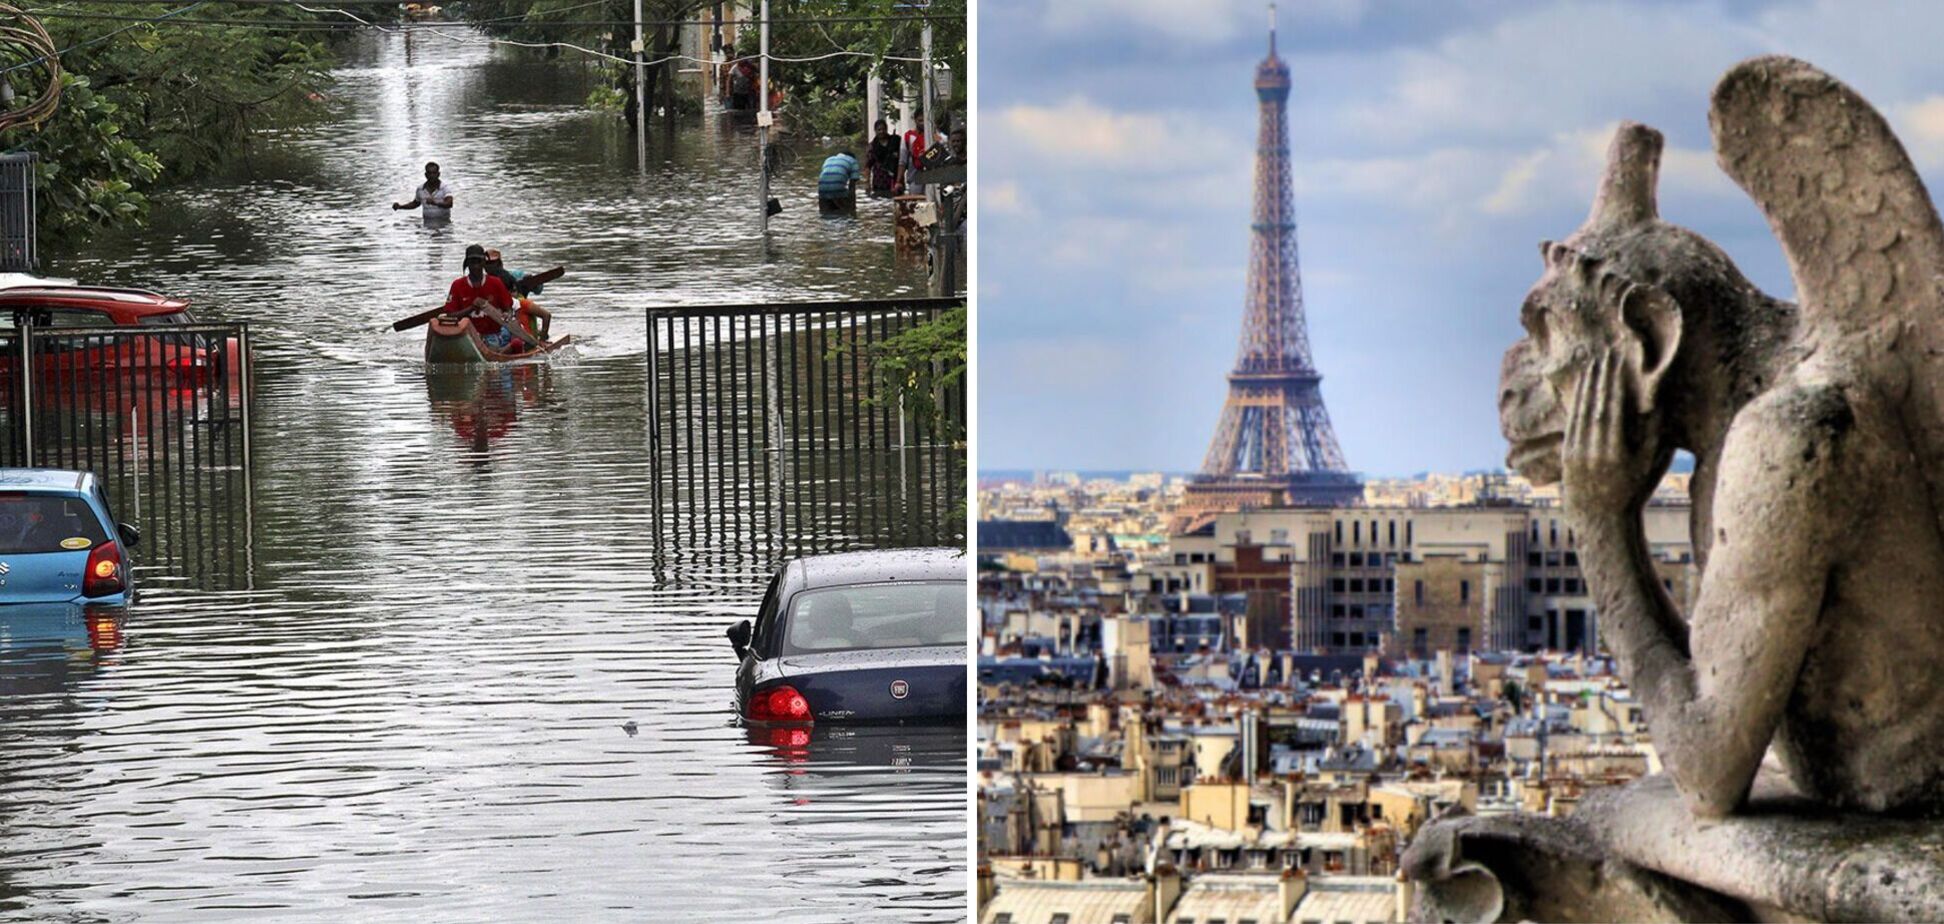 После аномальной жары Париж накрыл мощный ливень: затоплено метро, улицы ушли под воду. Видео